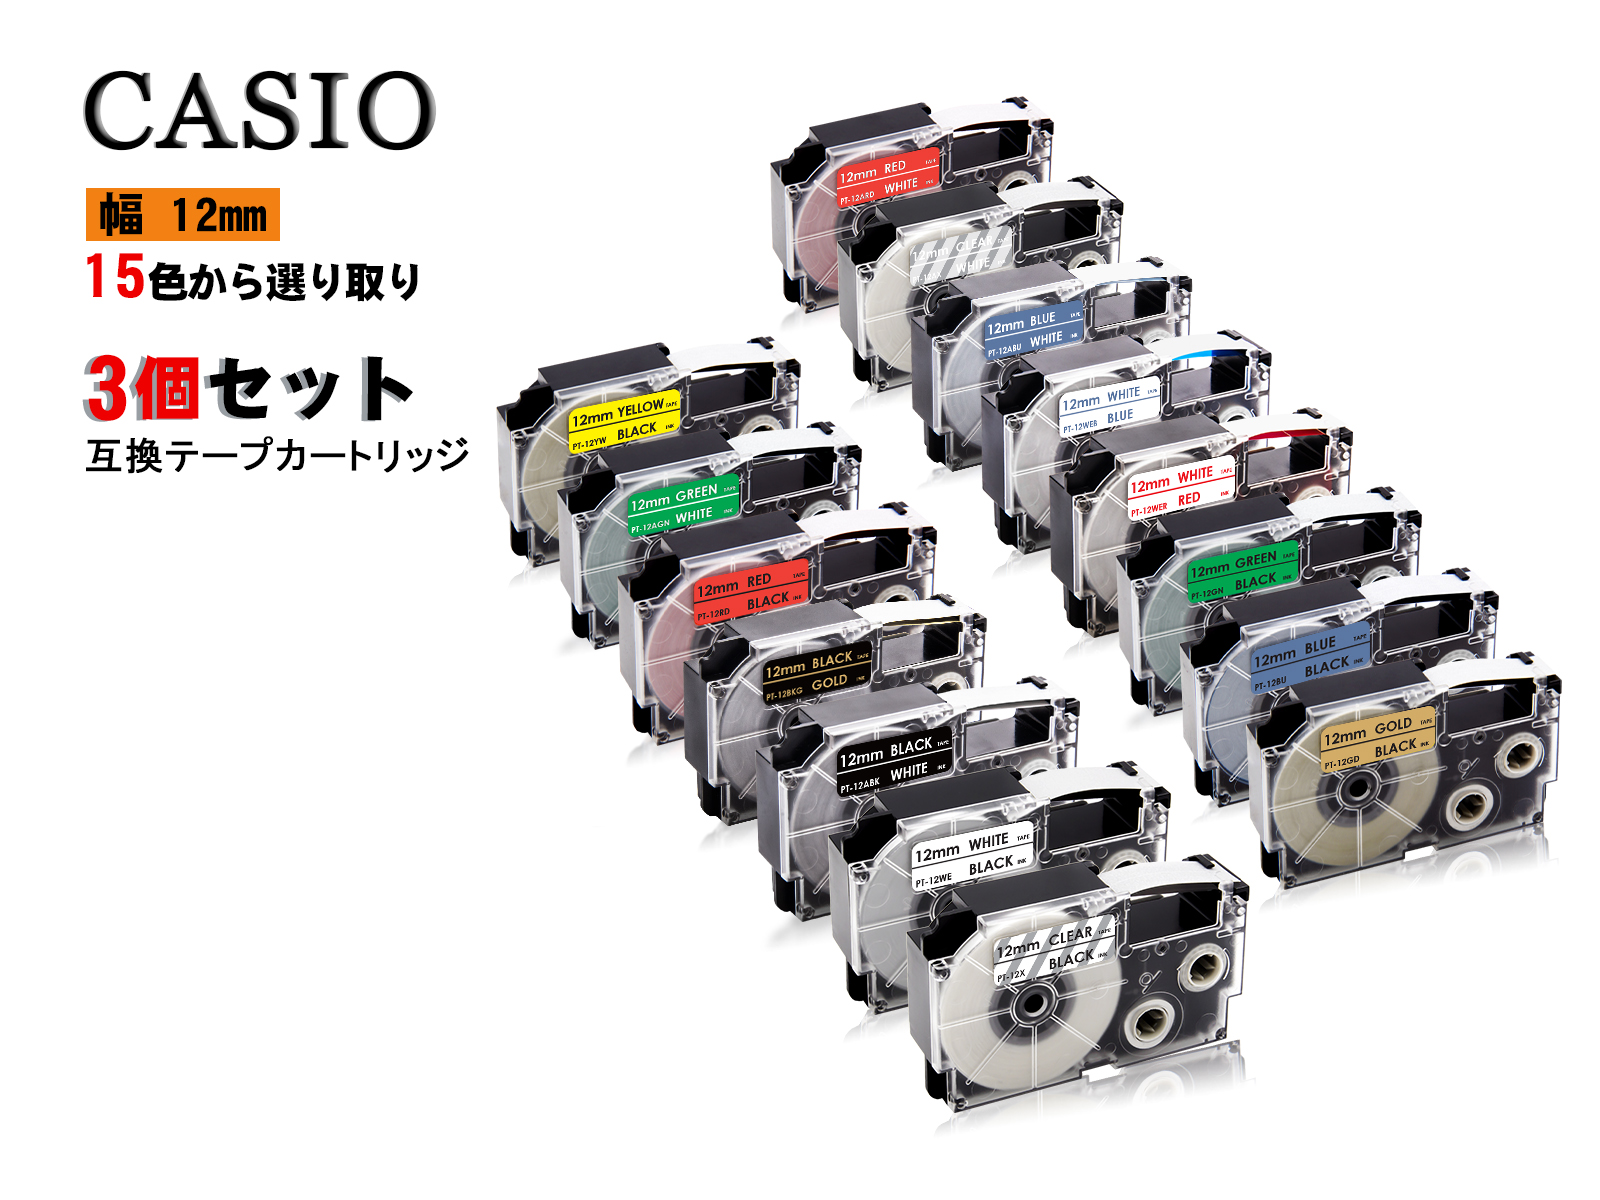 最安 新発売セール 強粘着 Casio casio カシオ ネームランド 互換テープカートリッジ テプラテープ 互換 希少 幅 カシオ用 3個セット 12mm 8m 全 長さ カラーラベル 2年保証可能 感謝価格 15色 テープカートリッジ